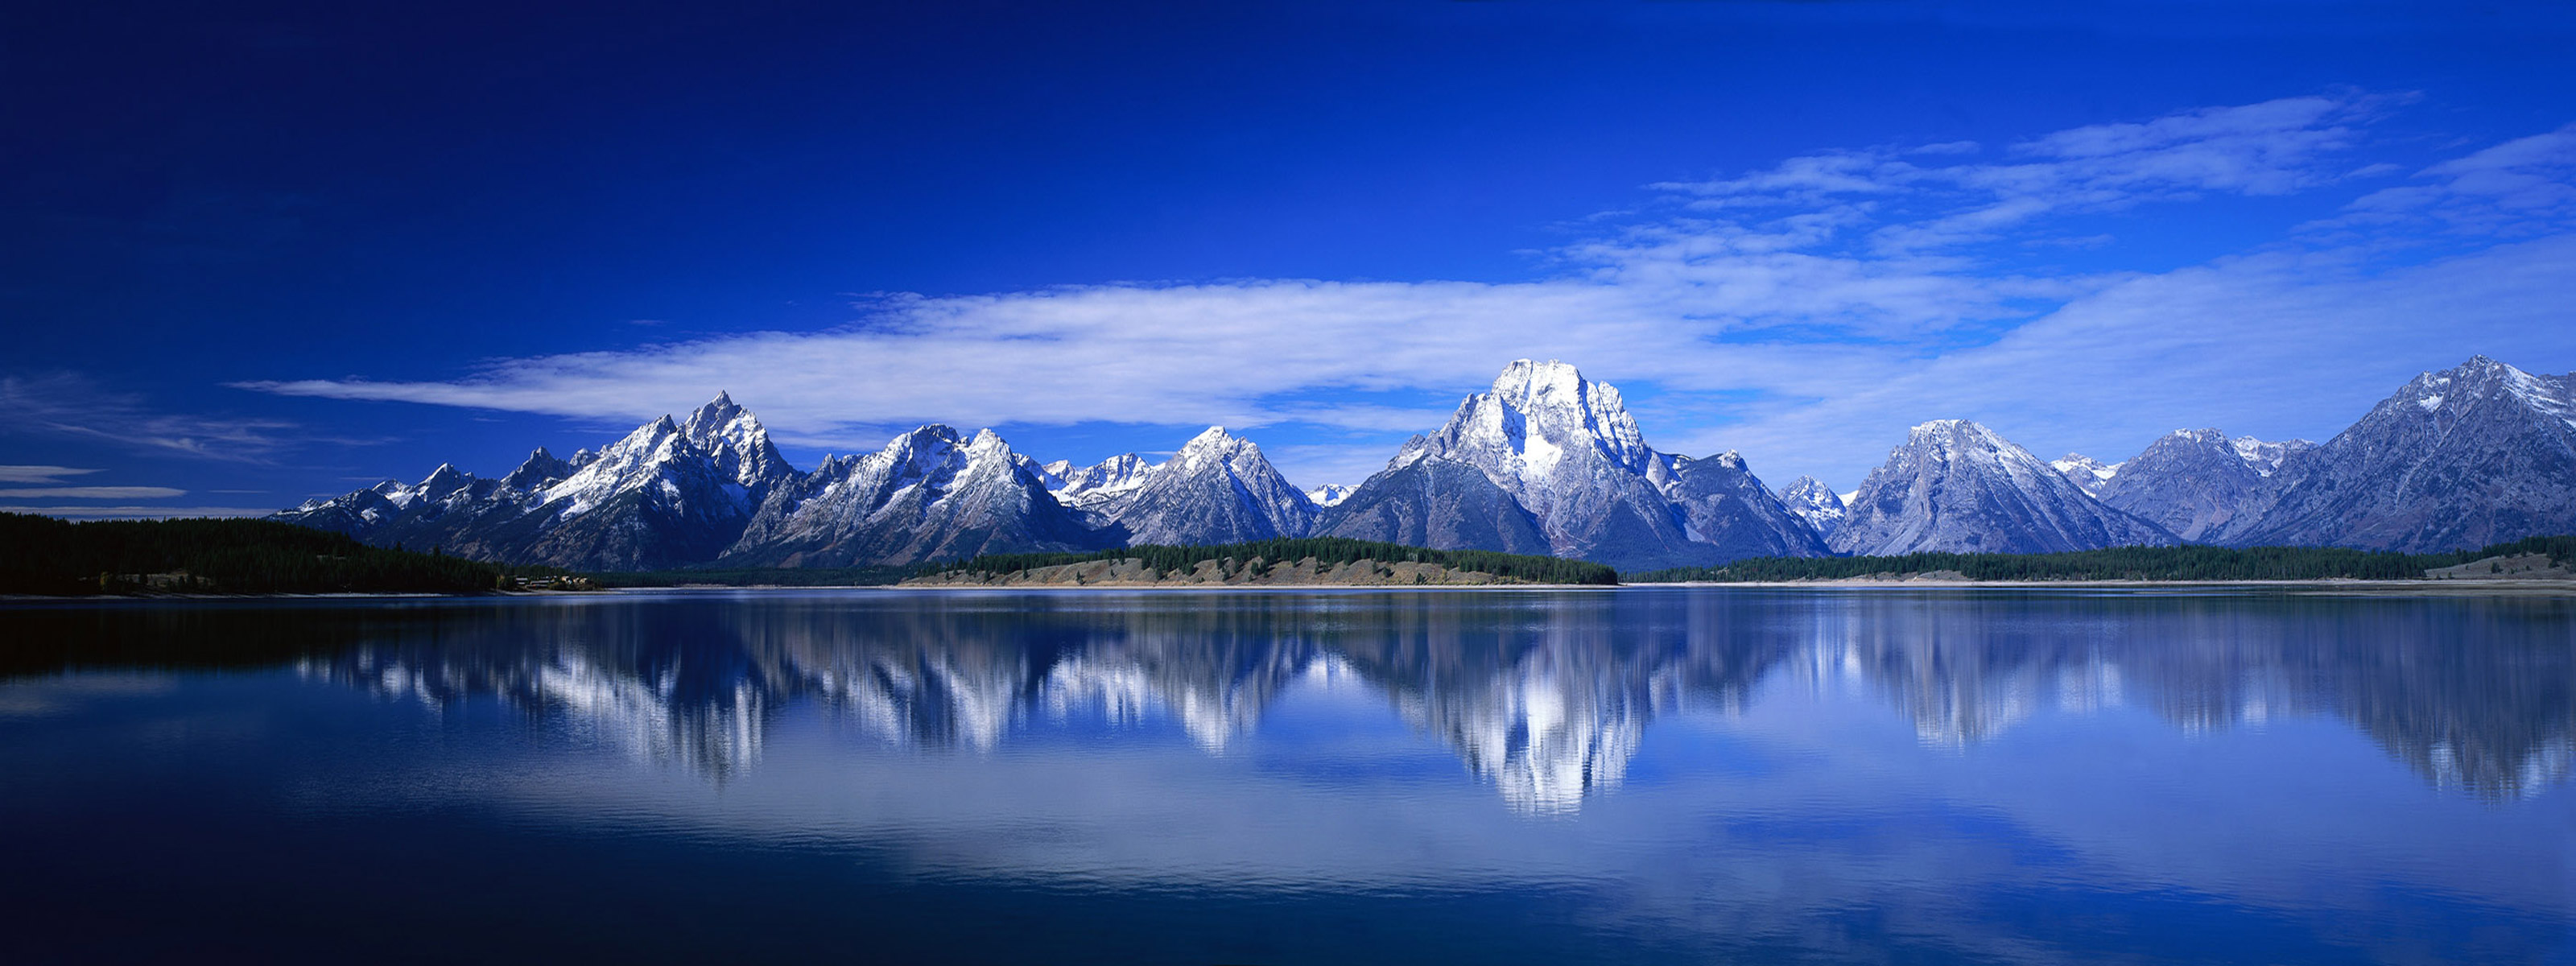 1080p Wallpaper nature, blue, national park, landscape Reflection